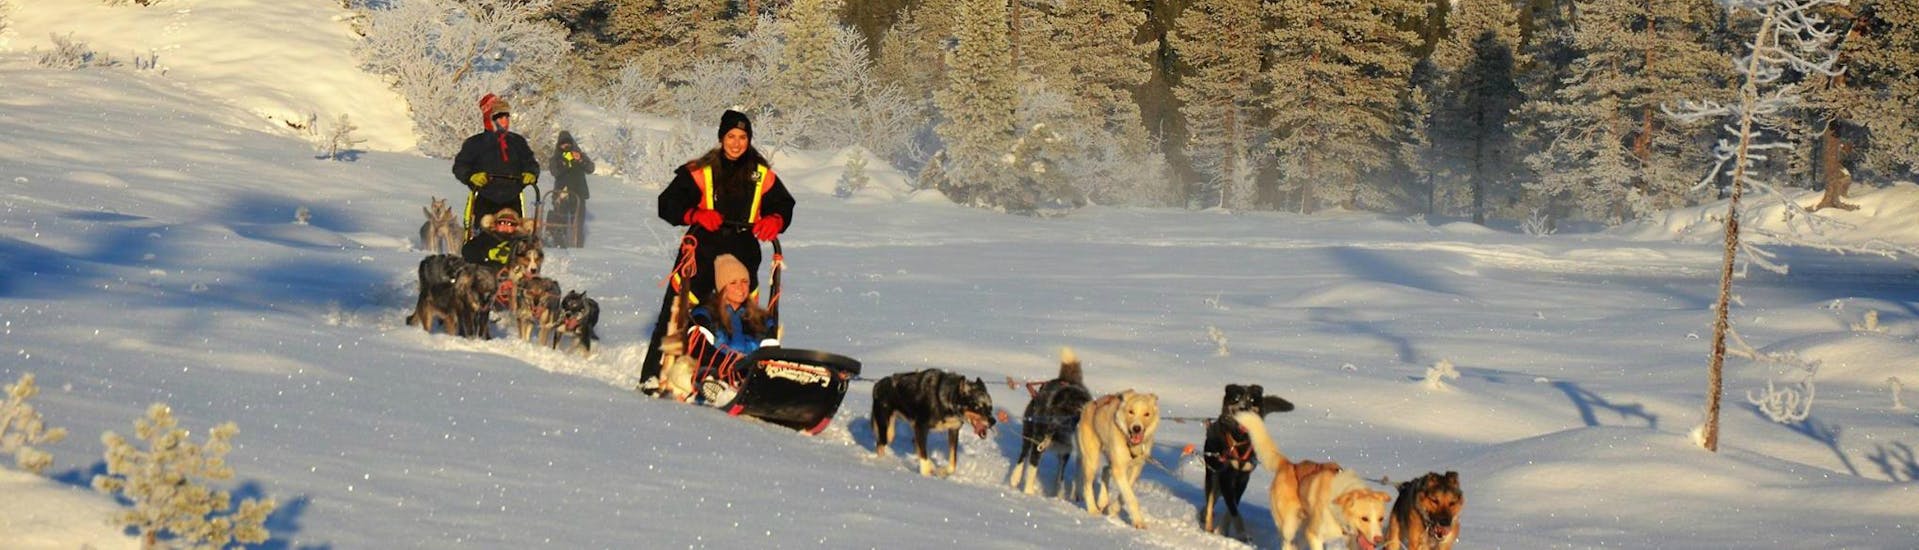 De deelnemers aan de Dog Sledding near Trondheim in Kopperå - 2 Day Tour with Norway Husky Adventure hebben veel plezier terwijl ze met hun team sledehonden door de glinsterende sneeuw sleeën.